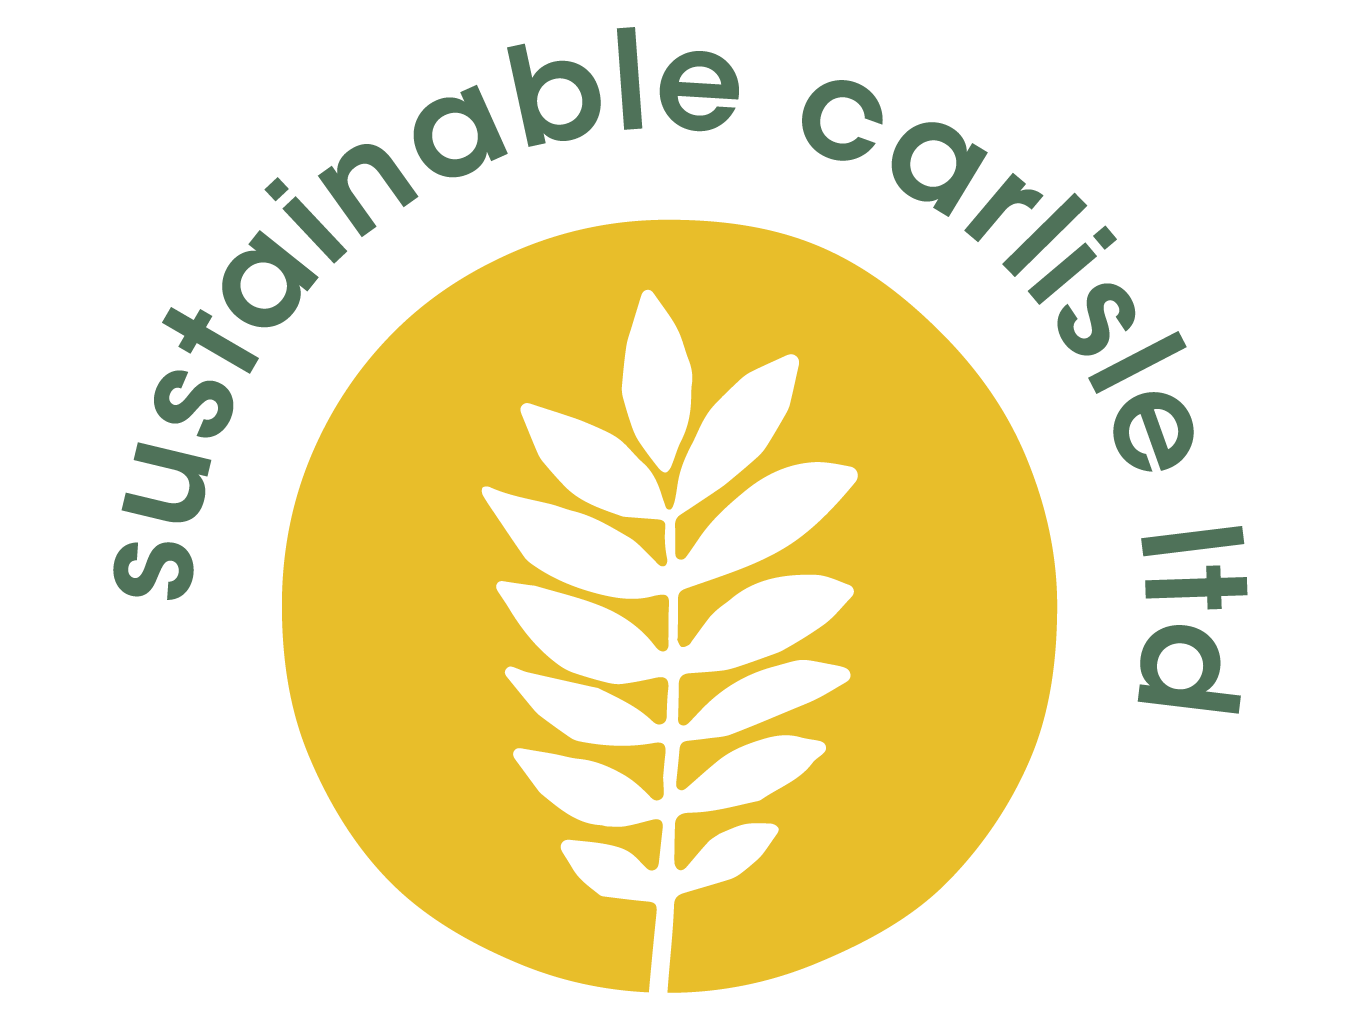 Sustainable Carlisle